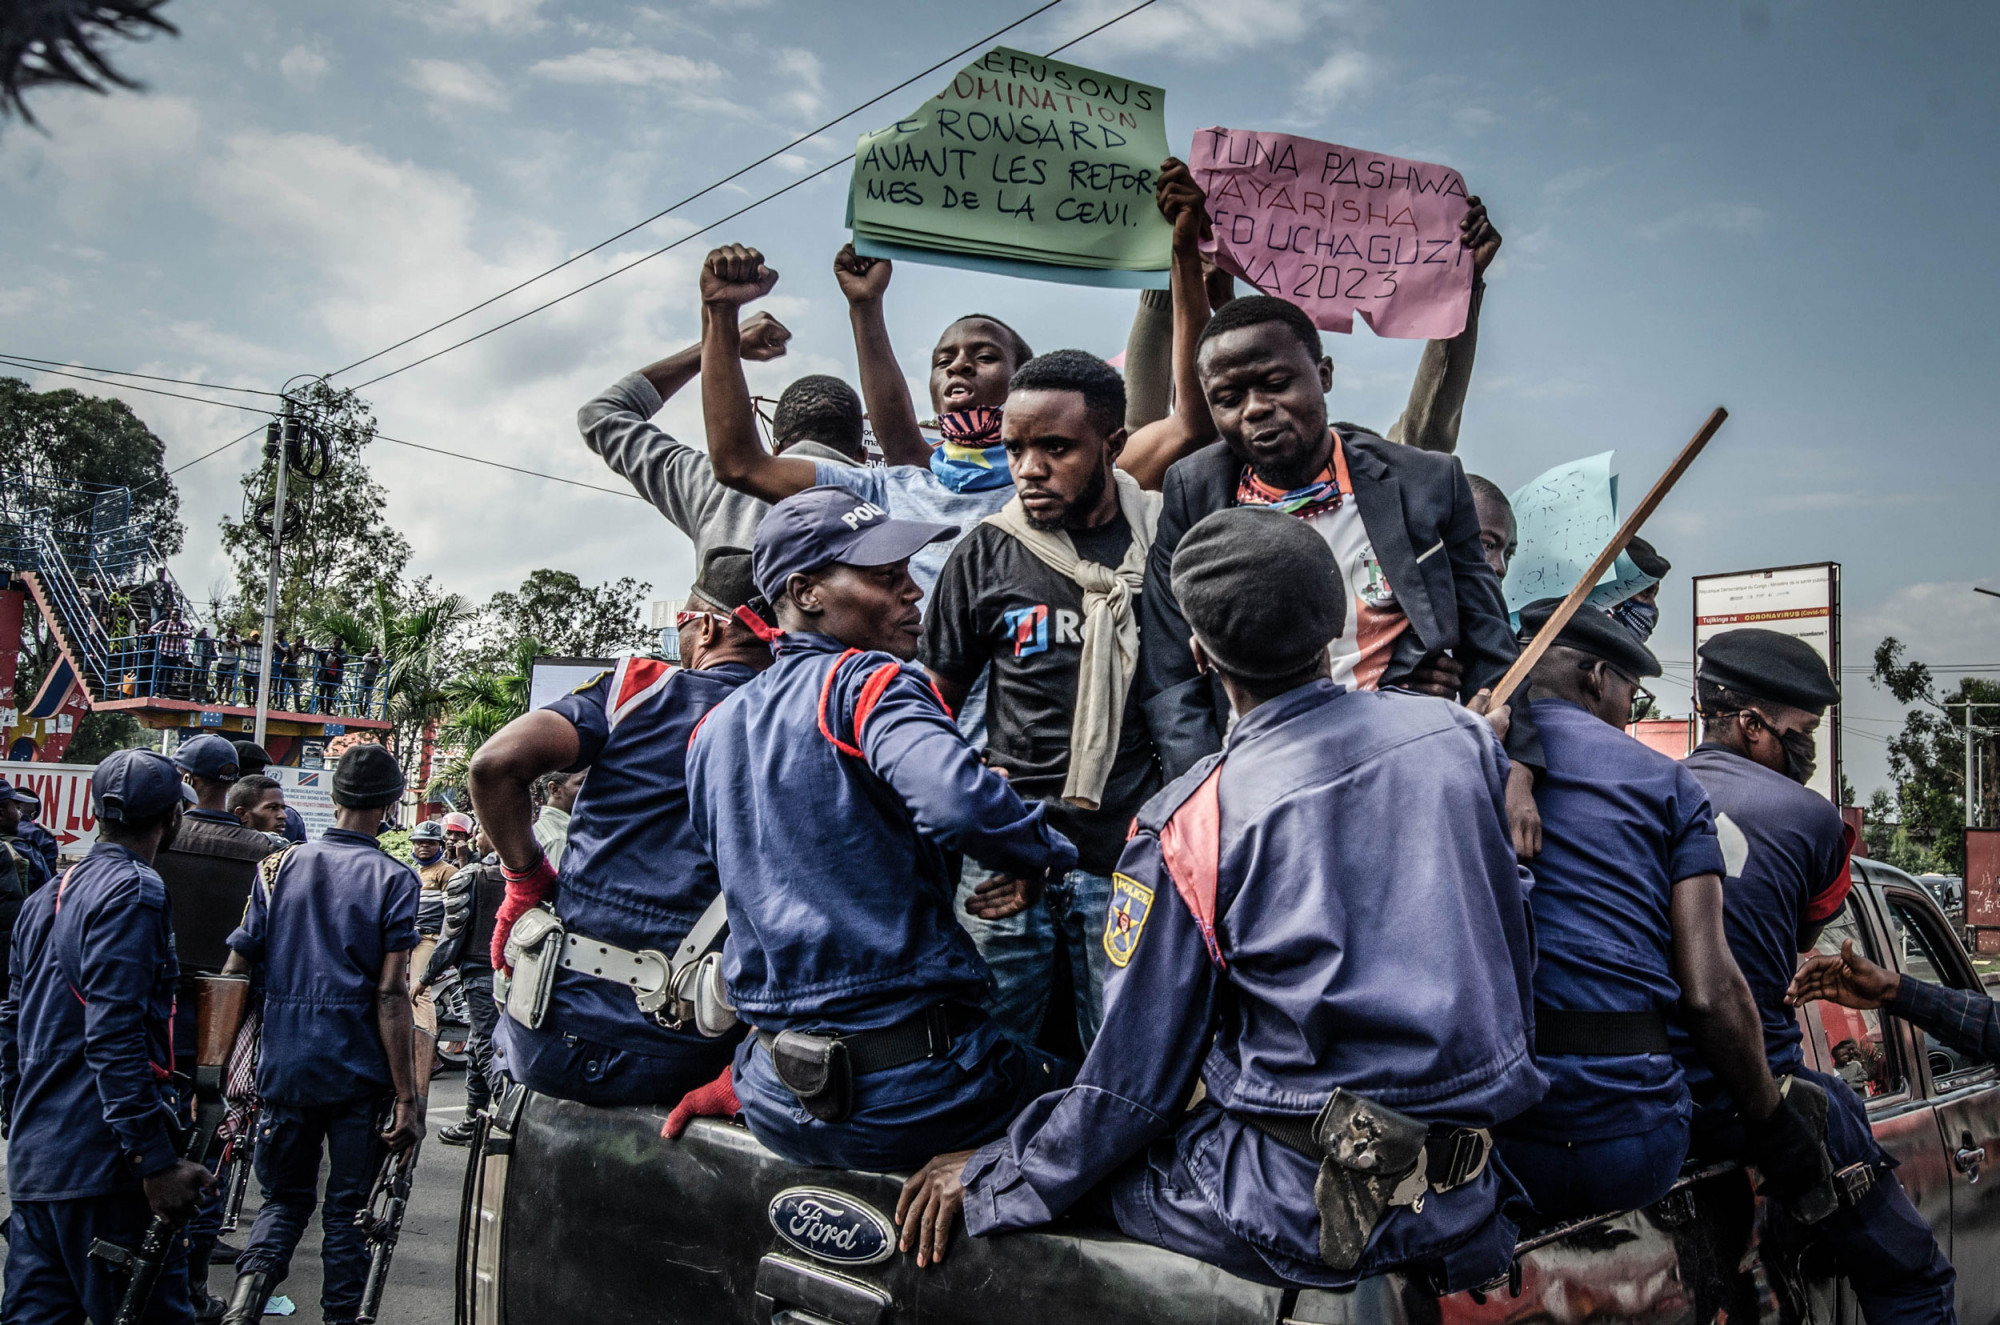 Goma, RDC, 13 juillet 2020. Arrêtés par la police, ces manifestants protestent contre la nomination à la tête de la commission électorale d’un homme accusé d’avoir manipulé des votes à l’avantage de l’ancien président Joseph Kabila. Les autorités congolaises sont critiquées pour avoir réprimé des détracteurs pacifiques, des journalistes et des membres de partis d’opposition, en utilisant le prétexte de l’état d’urgence pandémique pour étouffer les protestations politiques. © Moses Sawasawa pour la Fondation Carmignac